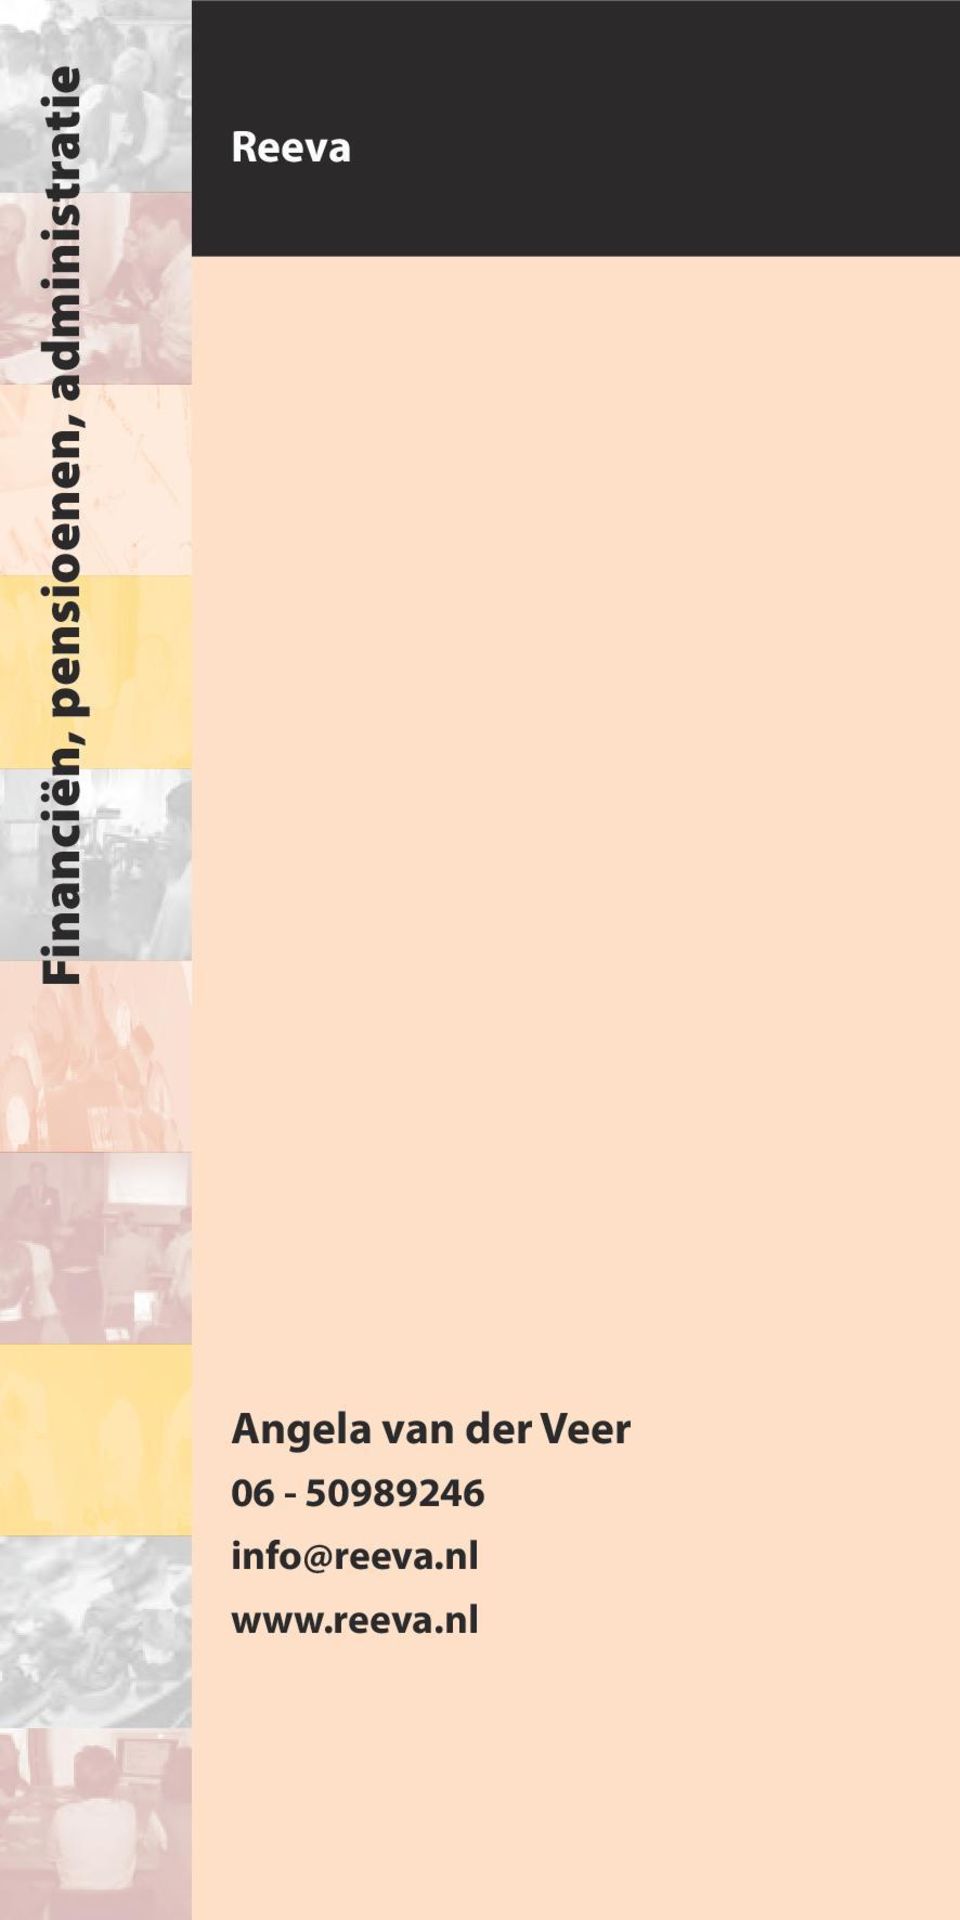 Angela van der Veer